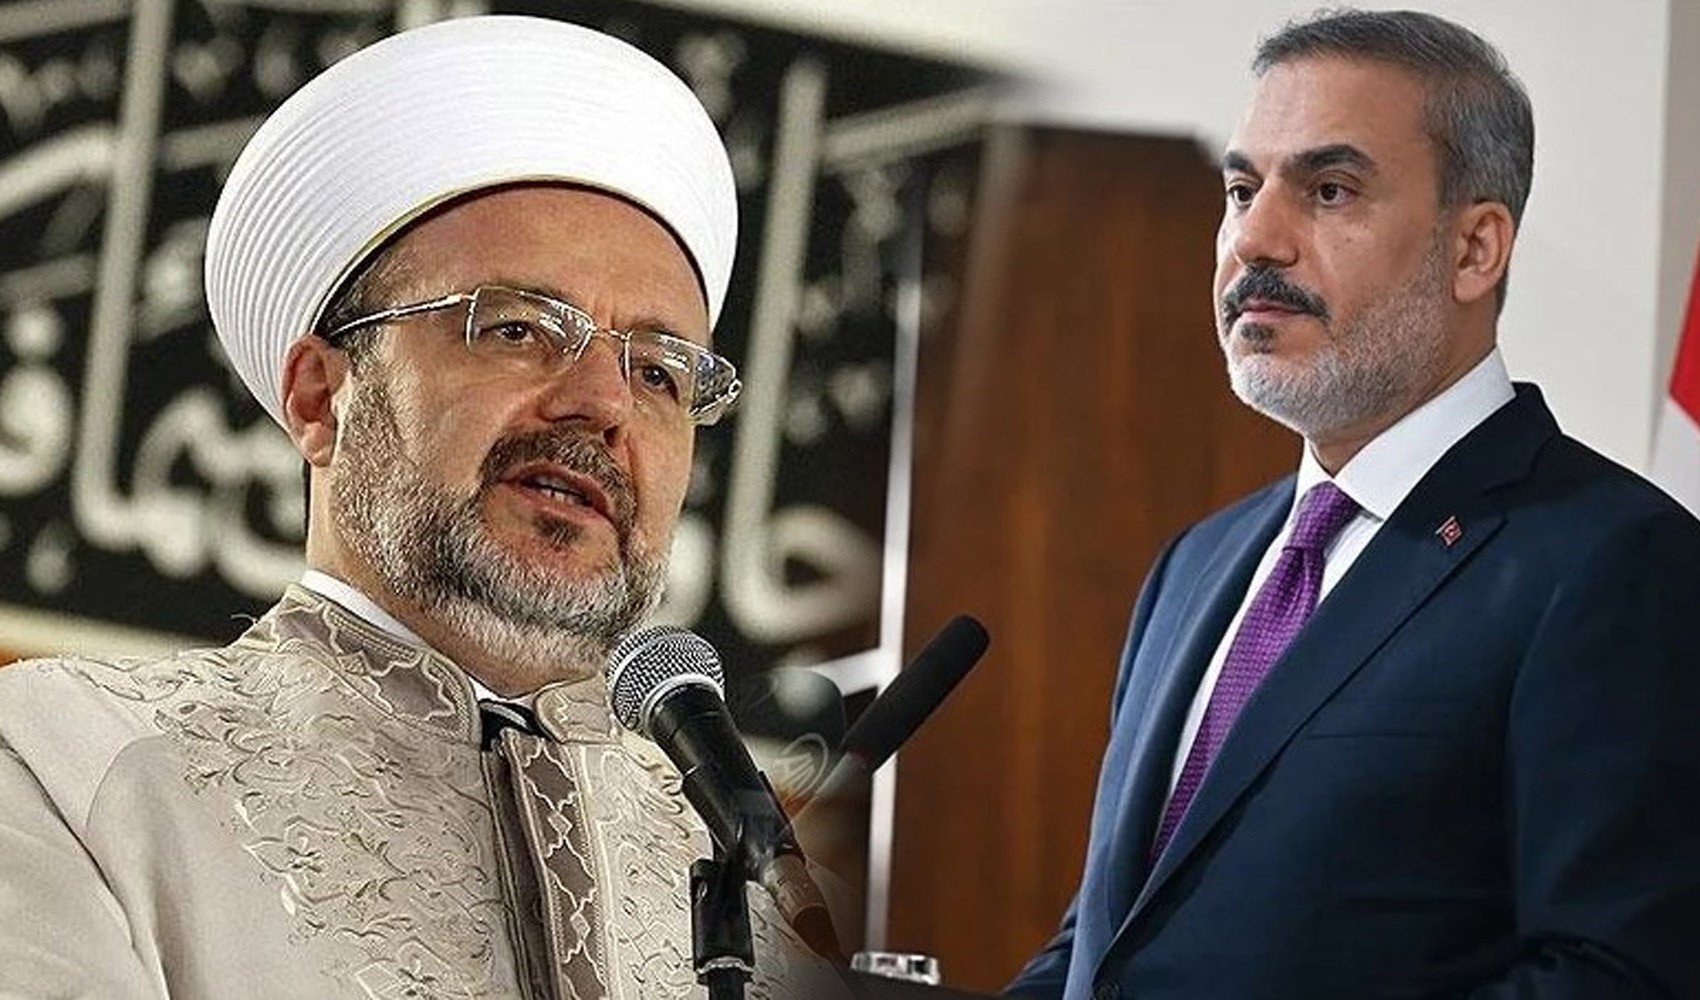 Diyanet İşleri eski başkanı Görmez 15 Temmuz gecesine dair mahkemede ifade verdi. Hakan Fidan'ın kaçırılması iddiası